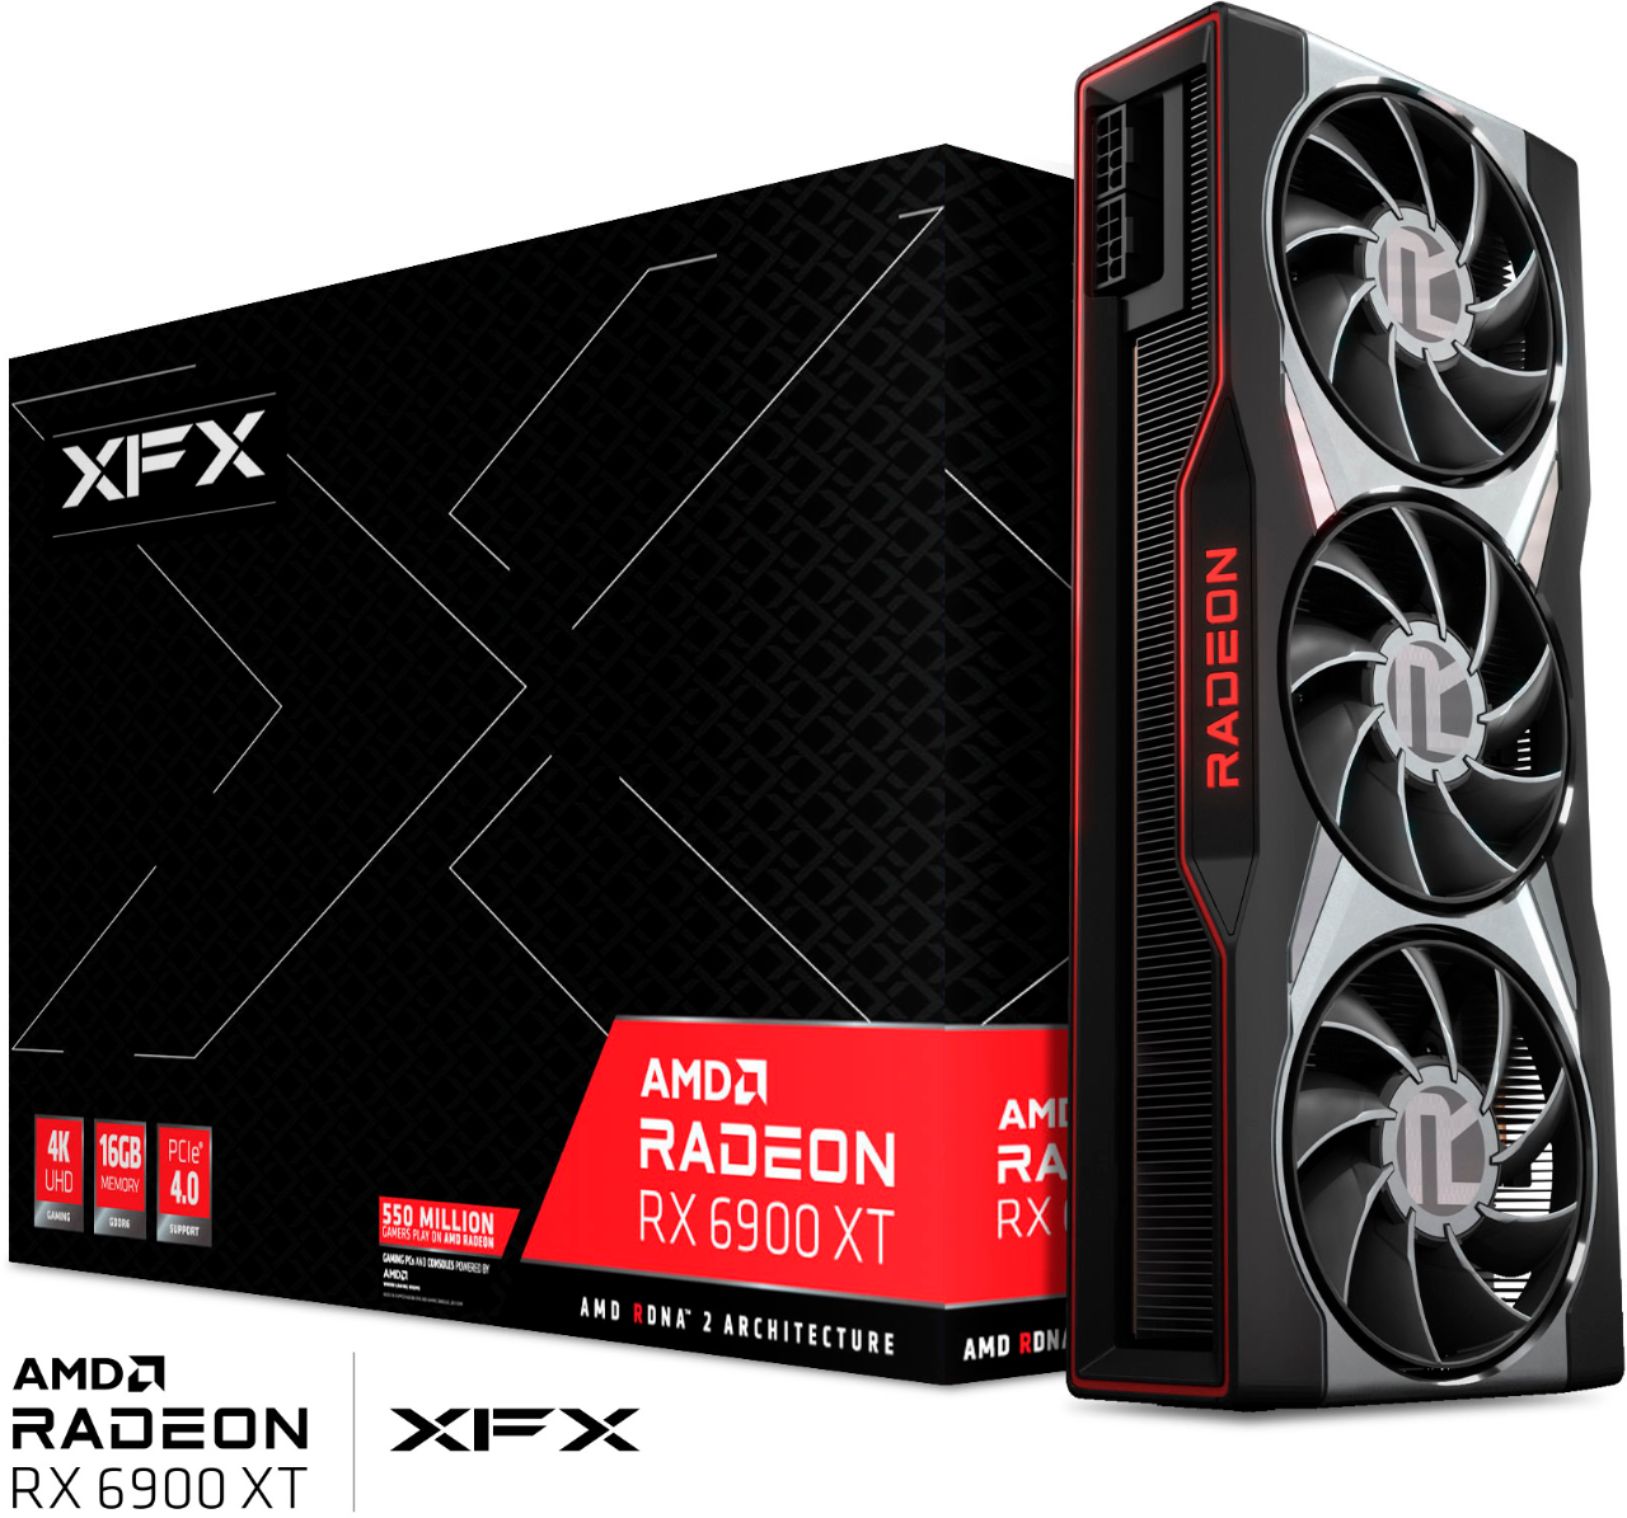 Best Buy: XFX AMD Radeon RX 6900 XT 16GB GDDR6 PCI Express 4.0 